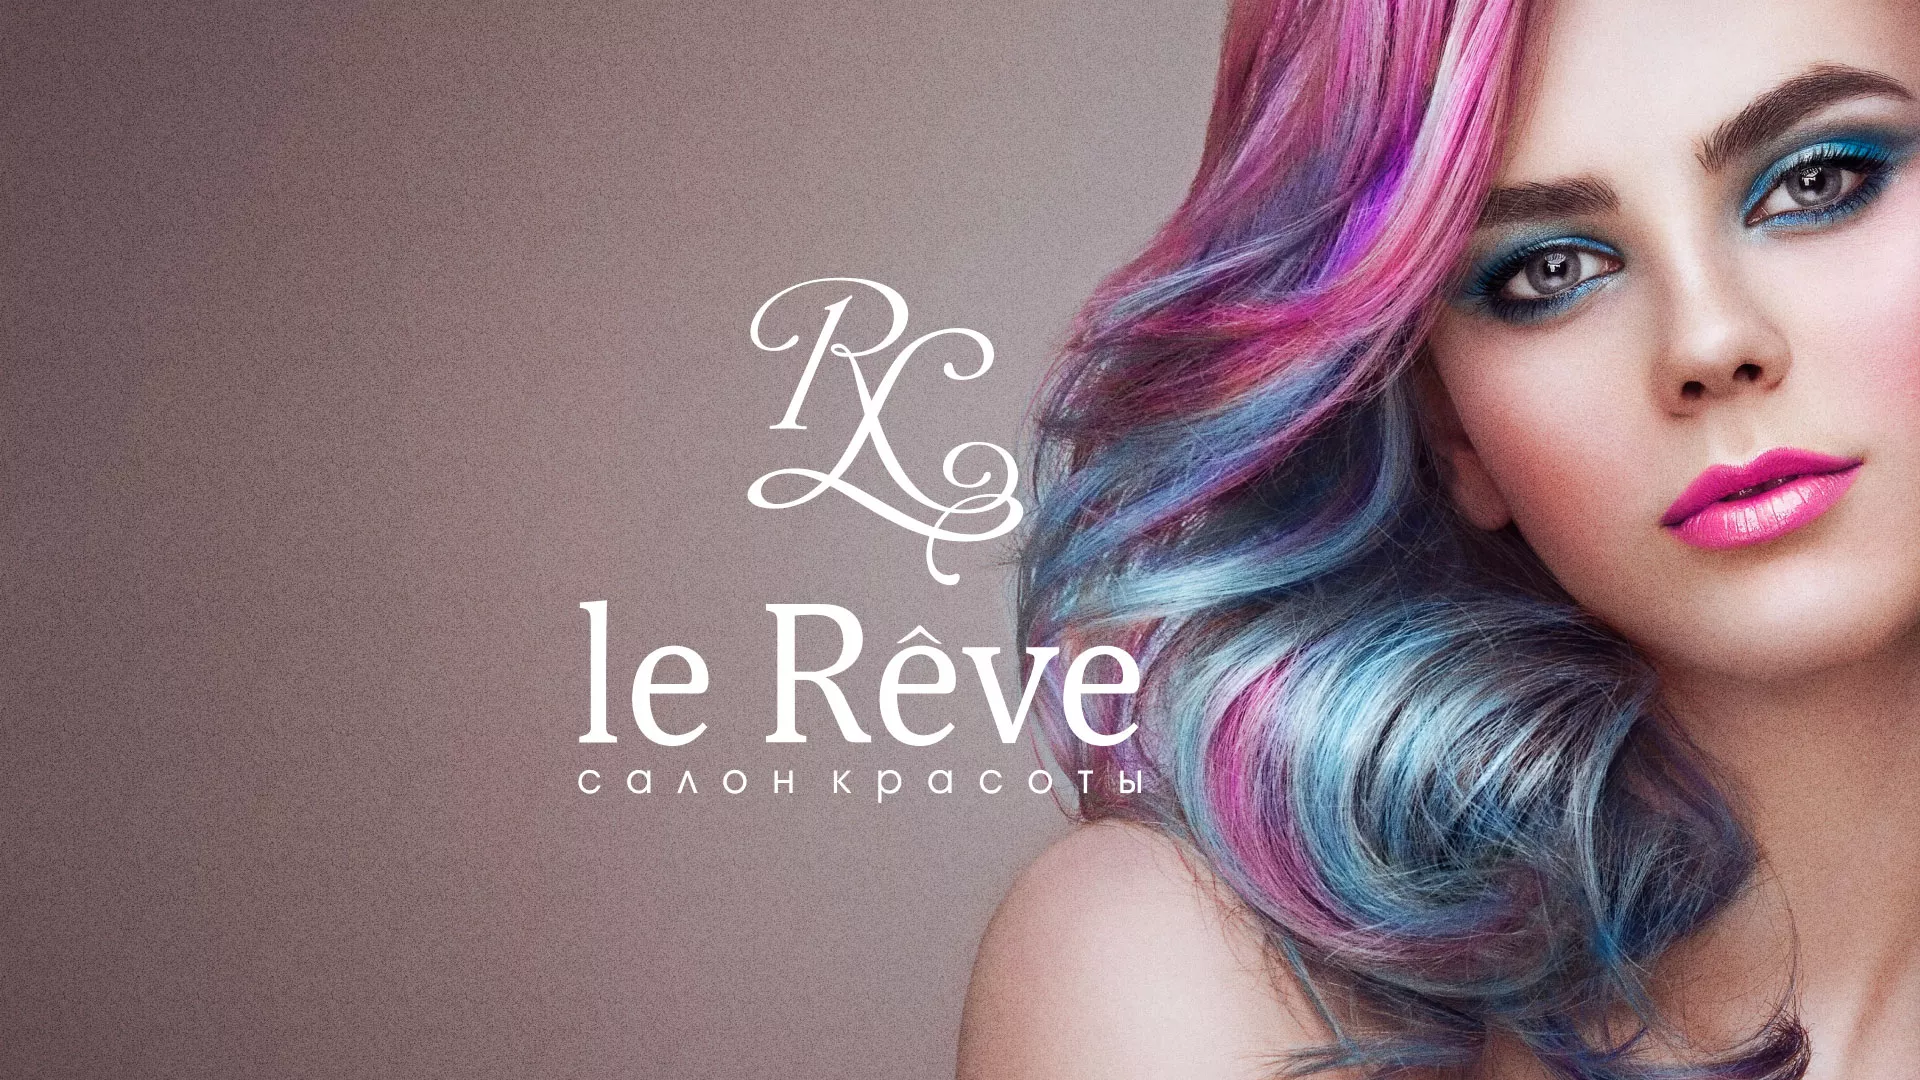 Создание сайта для салона красоты «Le Reve» в Уфе